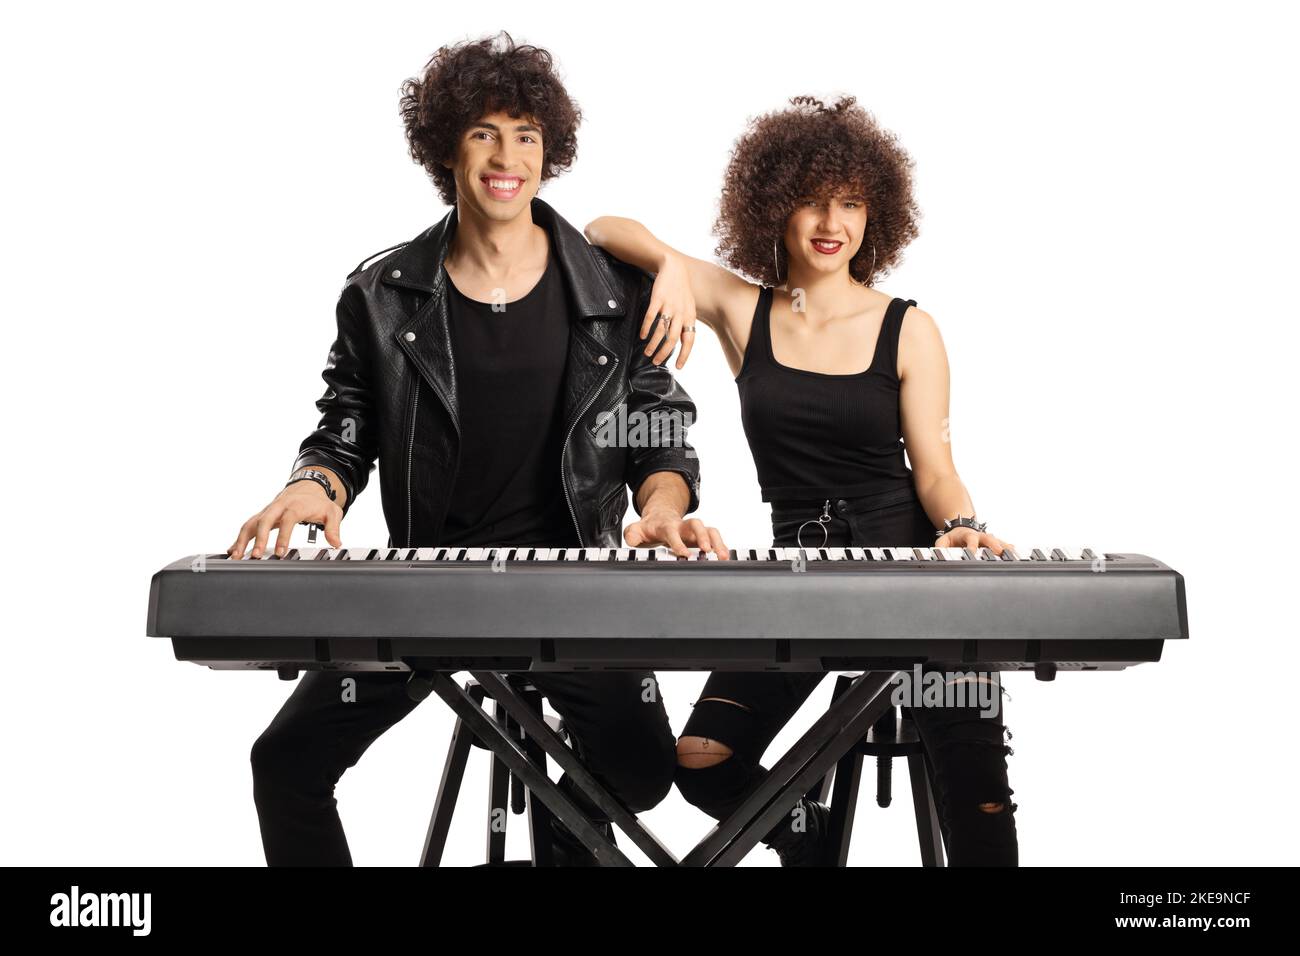 Jeune homme et femme aux cheveux bouclés posant avec un piano numérique isolé sur fond blanc Banque D'Images